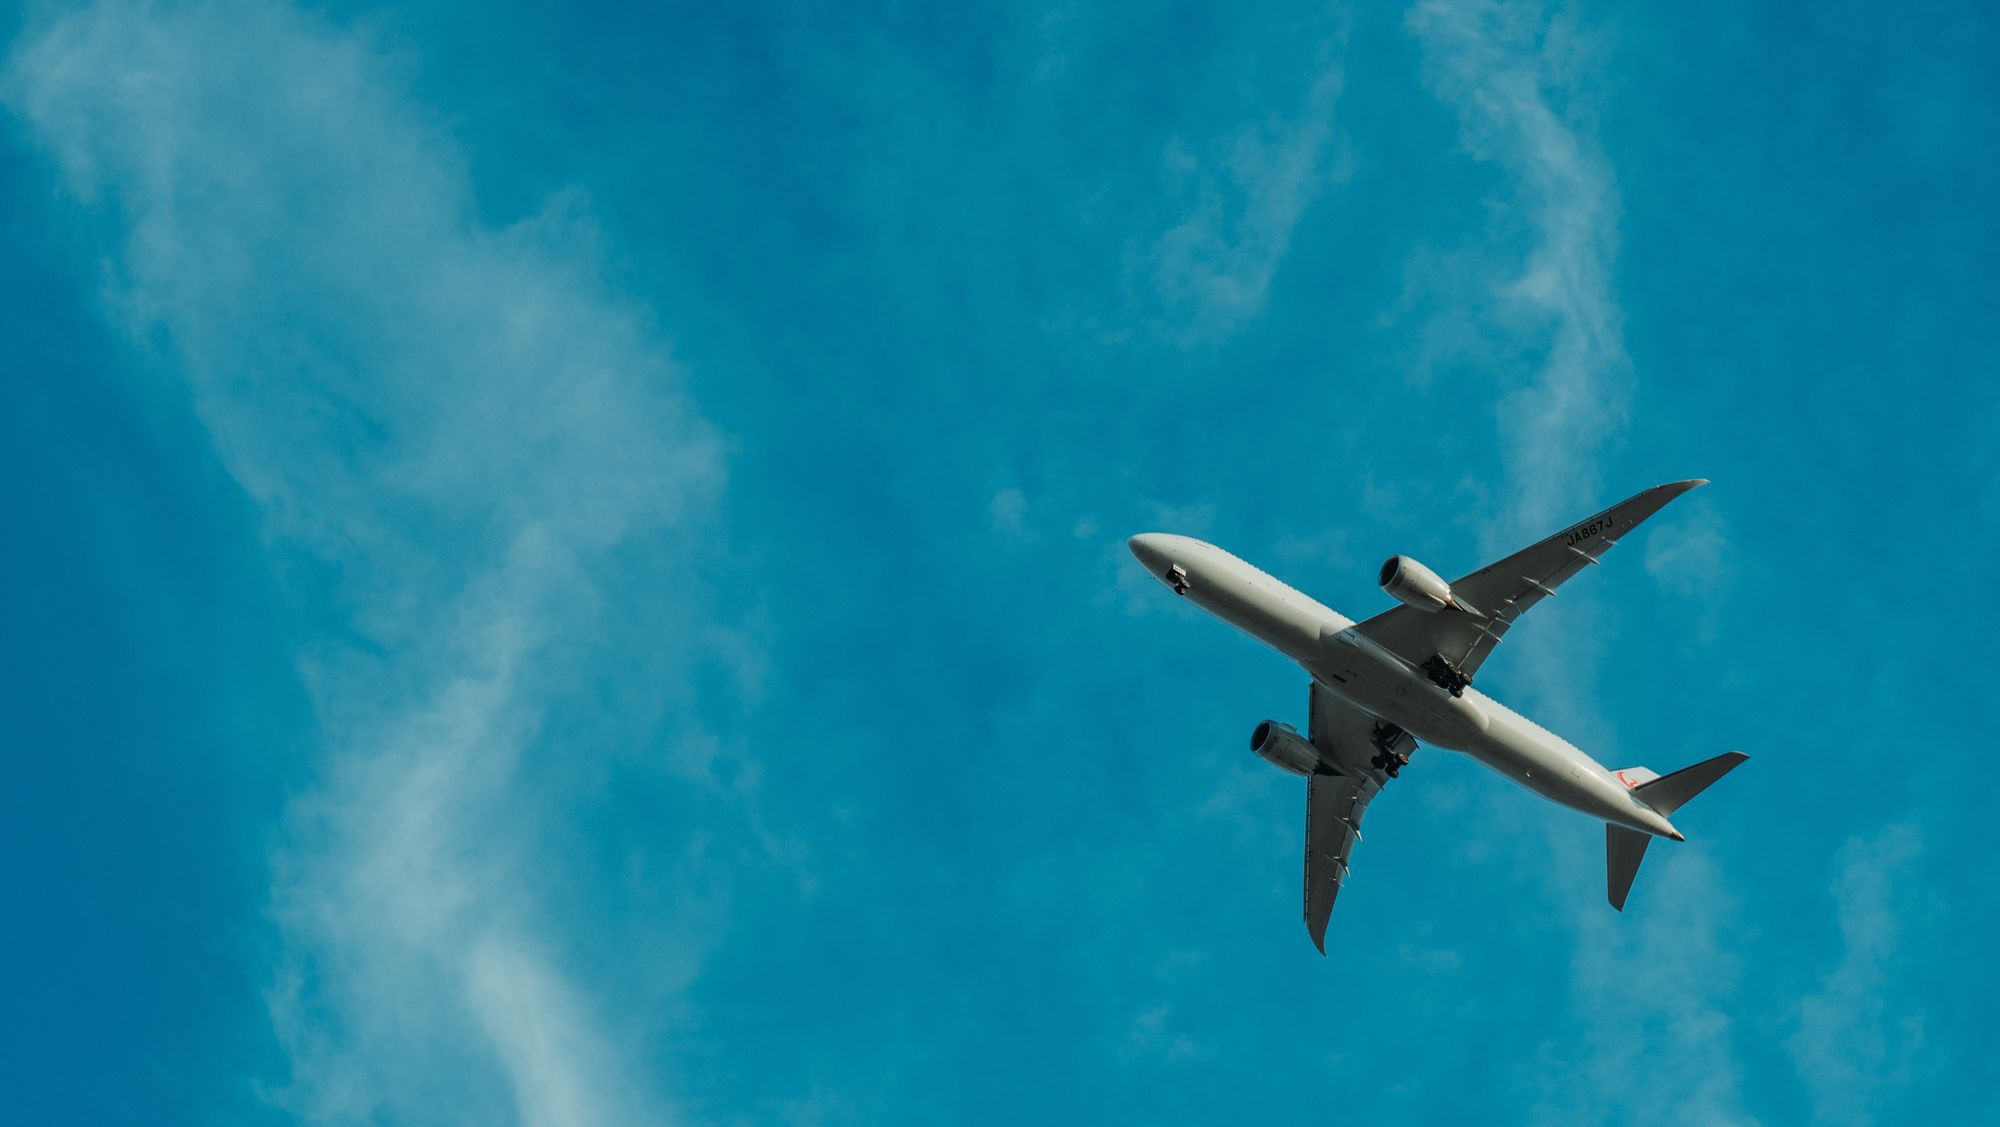 بٹ کوائن کا استعمال کرتے ہوئے سفر کریں: کریپٹو کرنسی کے ساتھ تعطیلات، پروازوں، ہوٹلوں اور مزید کی ادائیگی کے لیے آپ کا رہنما